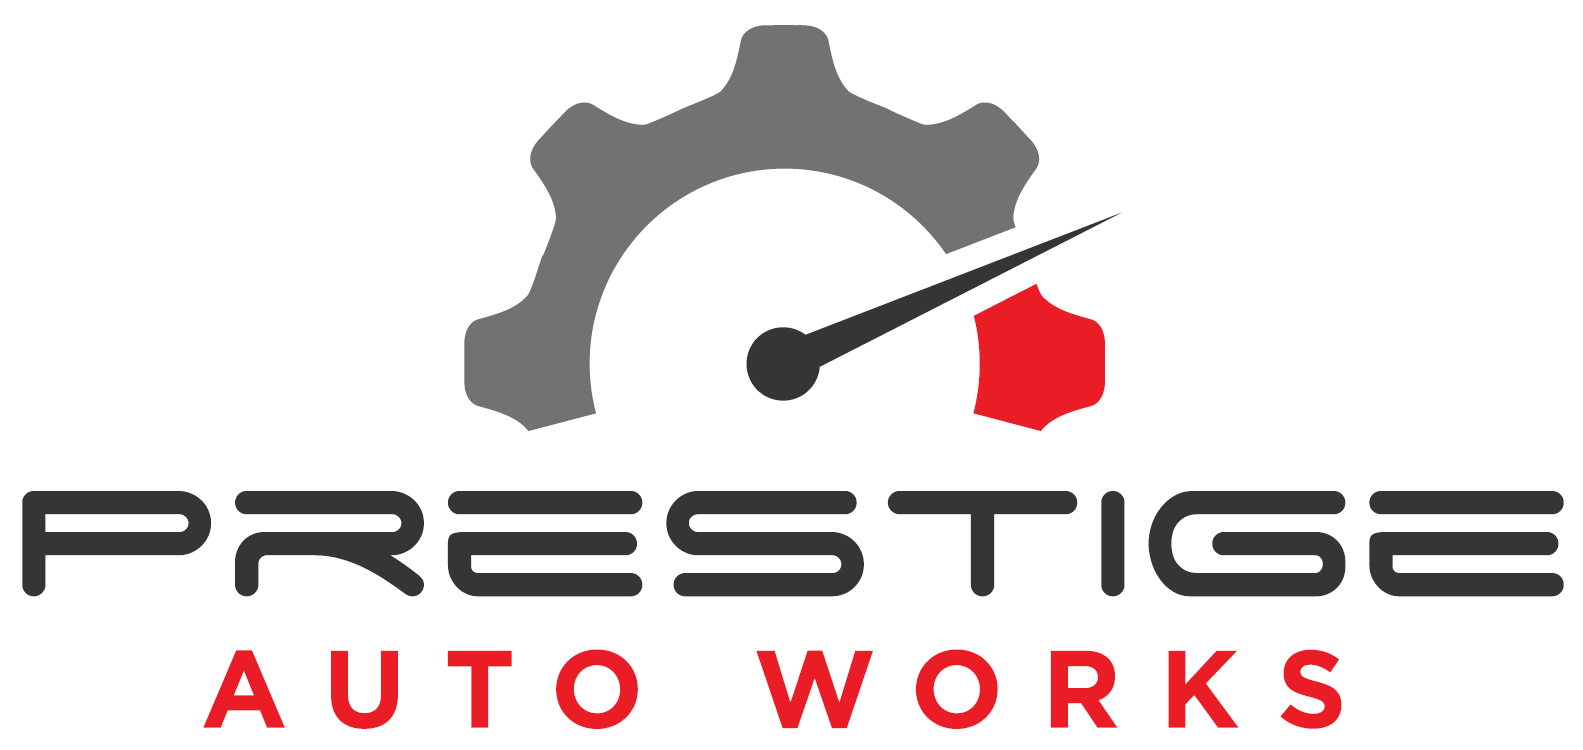 Prestige Auto Works - Auto Repair in Slidell